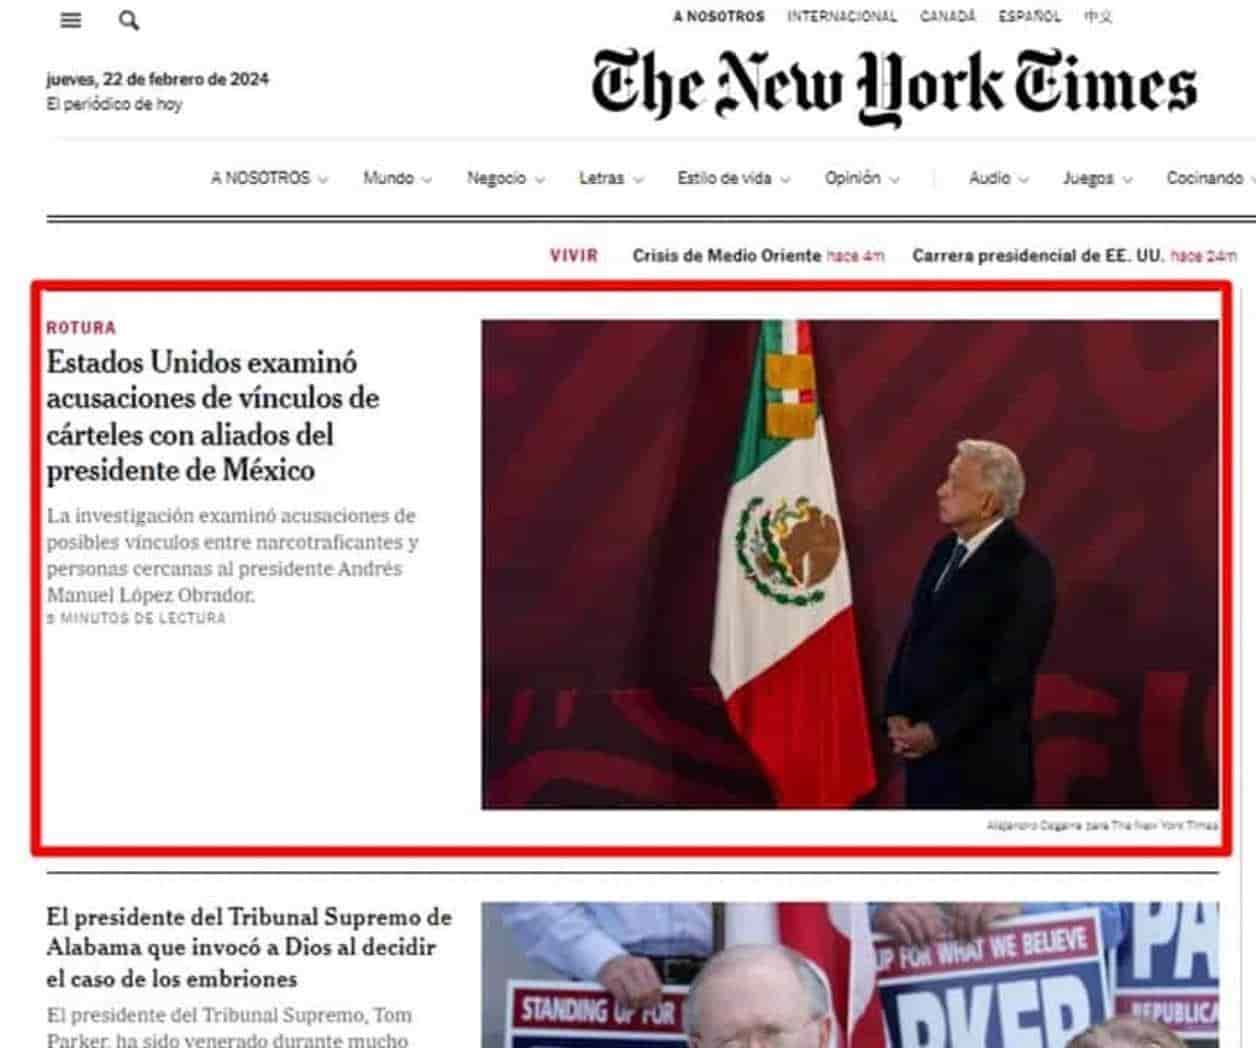 Alianza de Medios Mx, preocupada tras agresión de AMLO al NYT y periodista tras reportaje